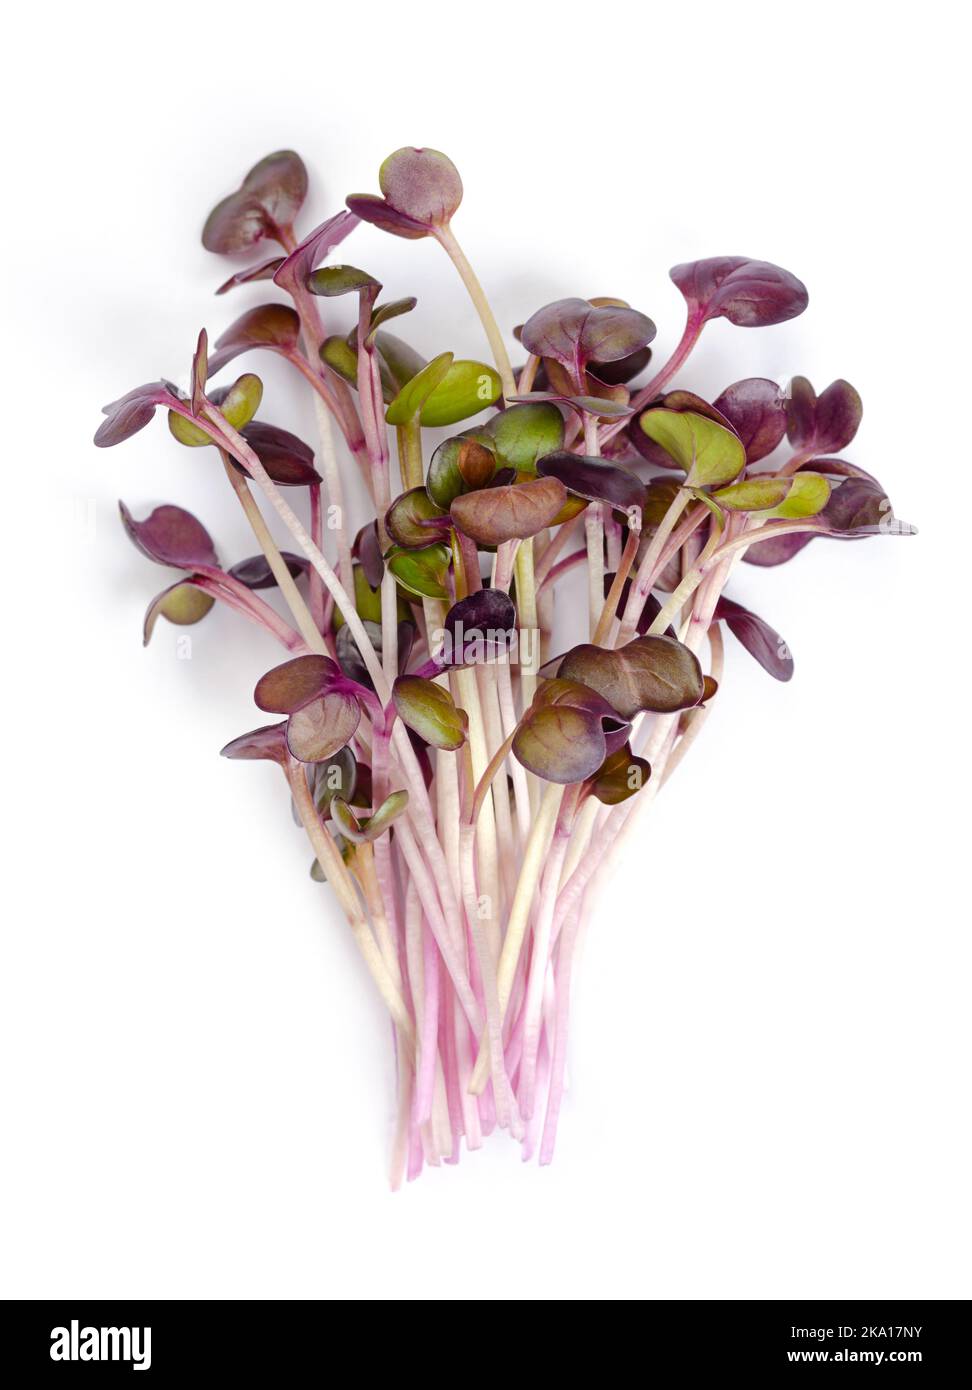 Ein Haufen roter Rettich-Mikrokrüne. Verzehrfertige Sämlinge, Triebe und Jungpflanzen der Sorte Raphanus sativus, einem essbaren Wurzelgemüse. Stockfoto